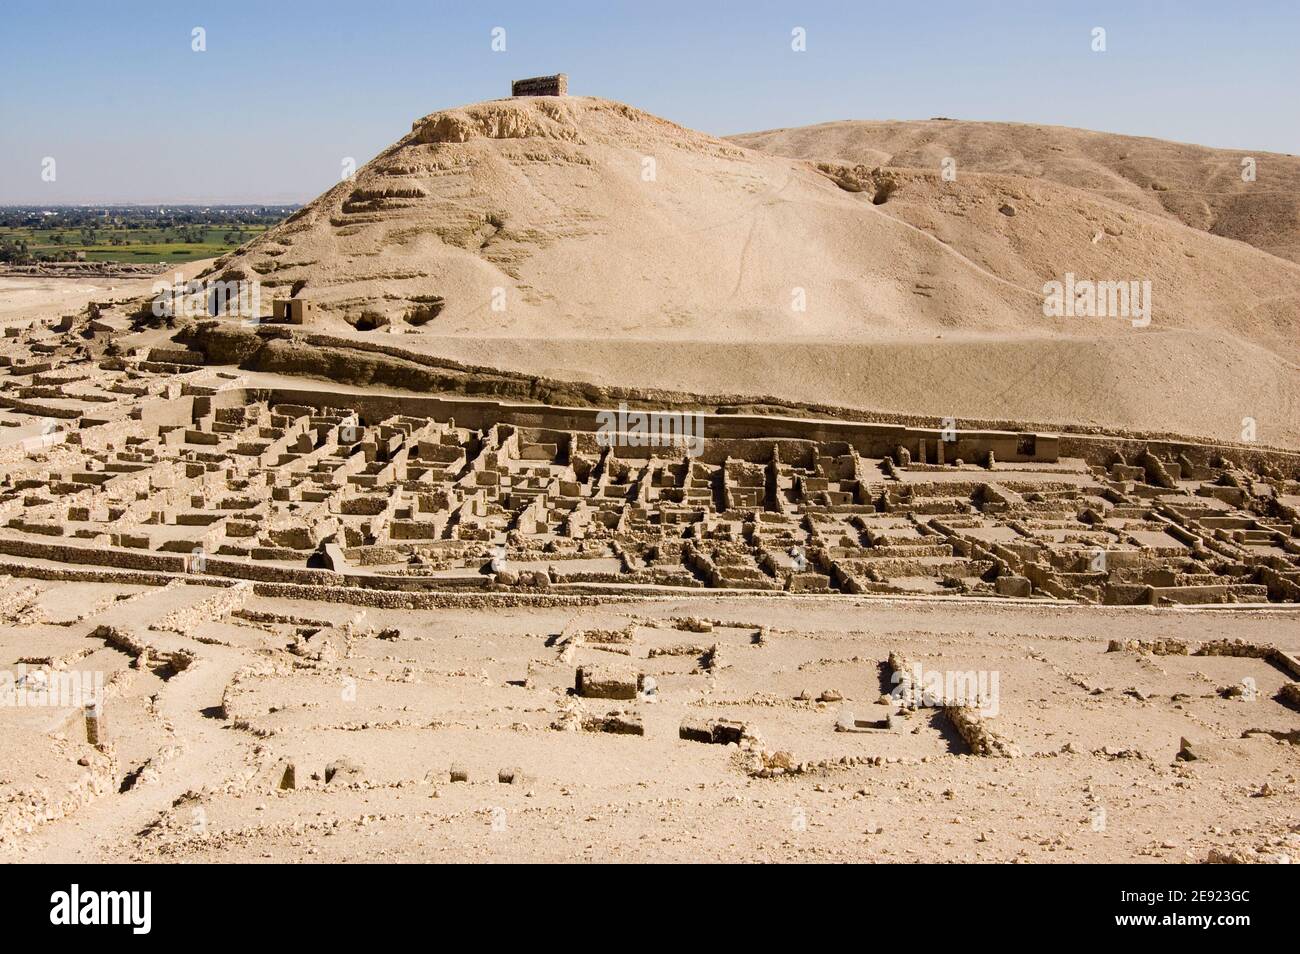 Die Ruinen des alten ägyptischen Arbeiterdorfes Deir el Medina am Westufer des Nils in Luxor, Ägypten. Alte Ruine, über 1000 Jahre alt. Stockfoto